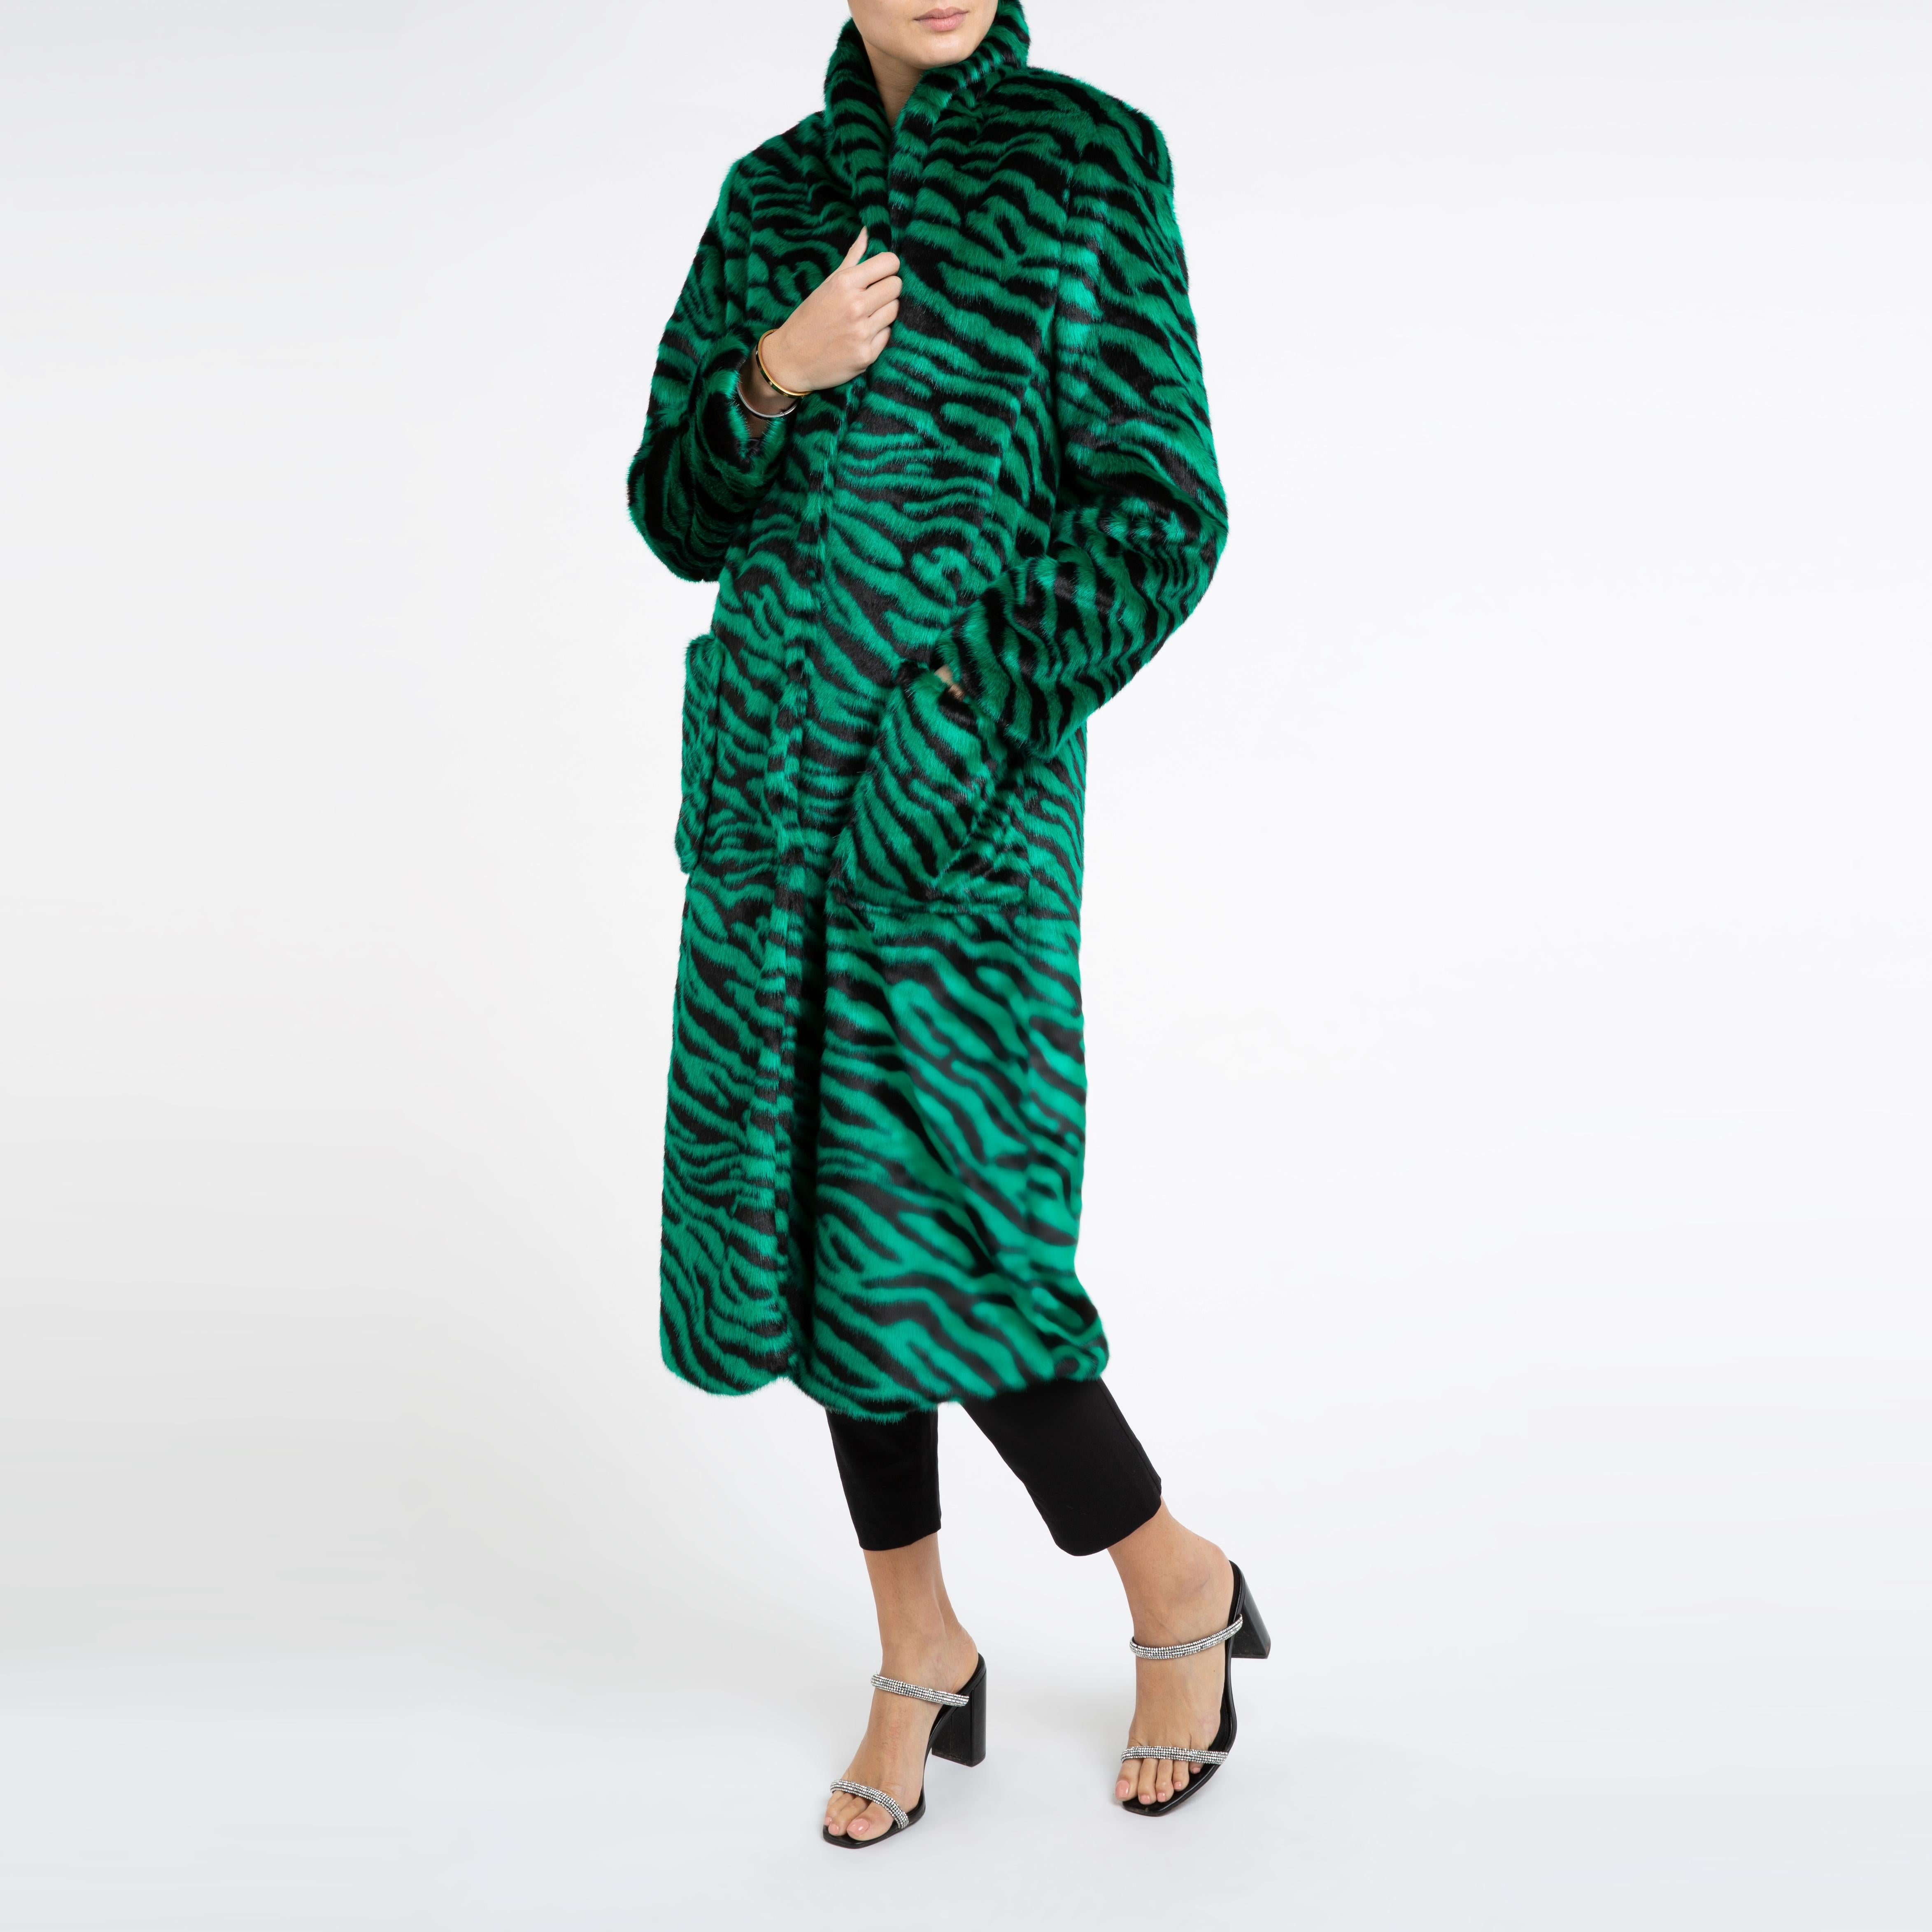 Verheyen London Esmeralda Faux Fur Coat in Emerald Green Zebra Print size uk 12 For Sale 3